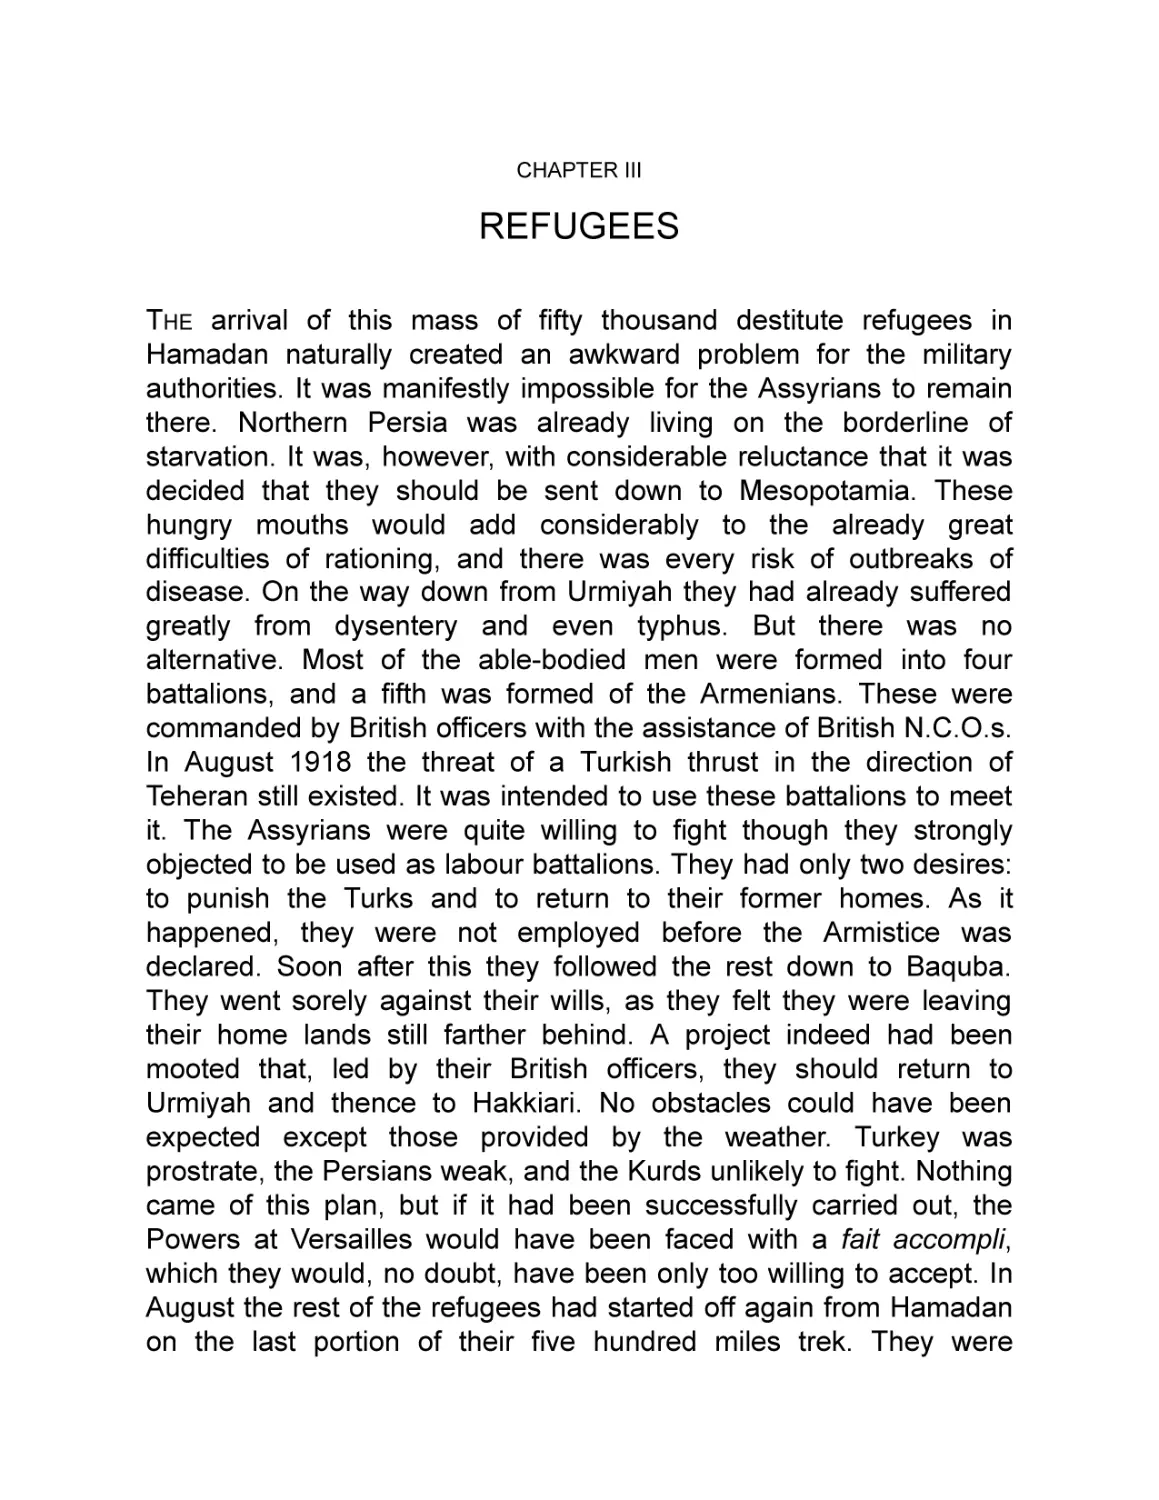 III Refugees